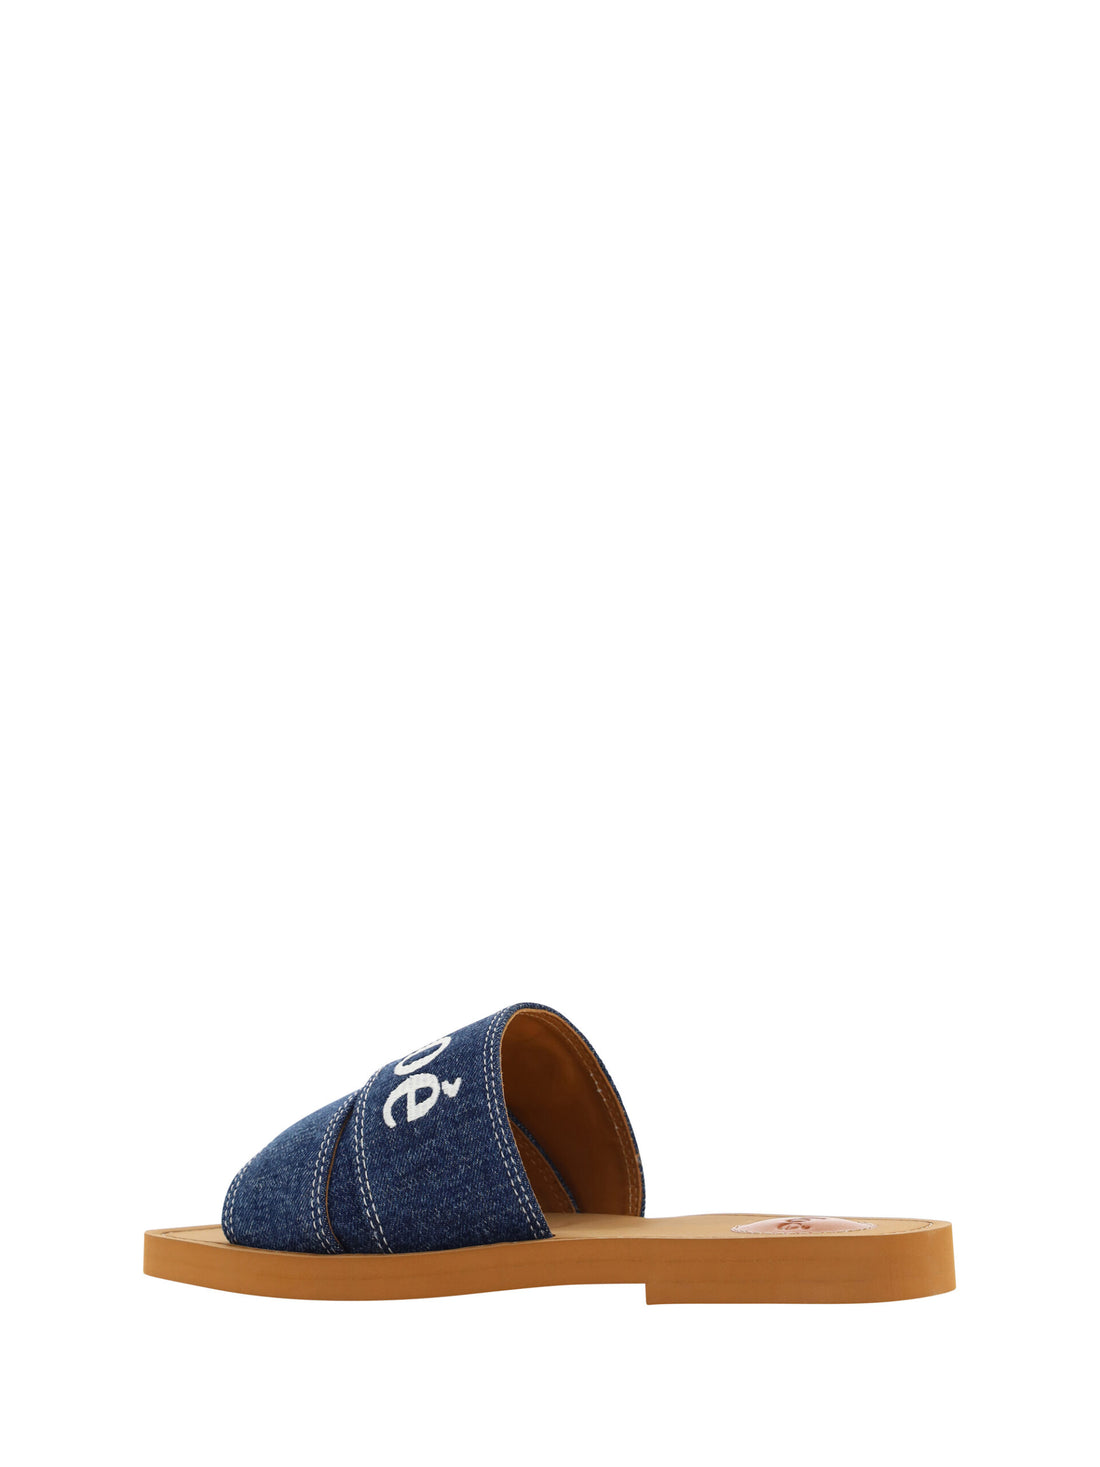 Chloé Denim Blue Cotton Slides Woody Sandals